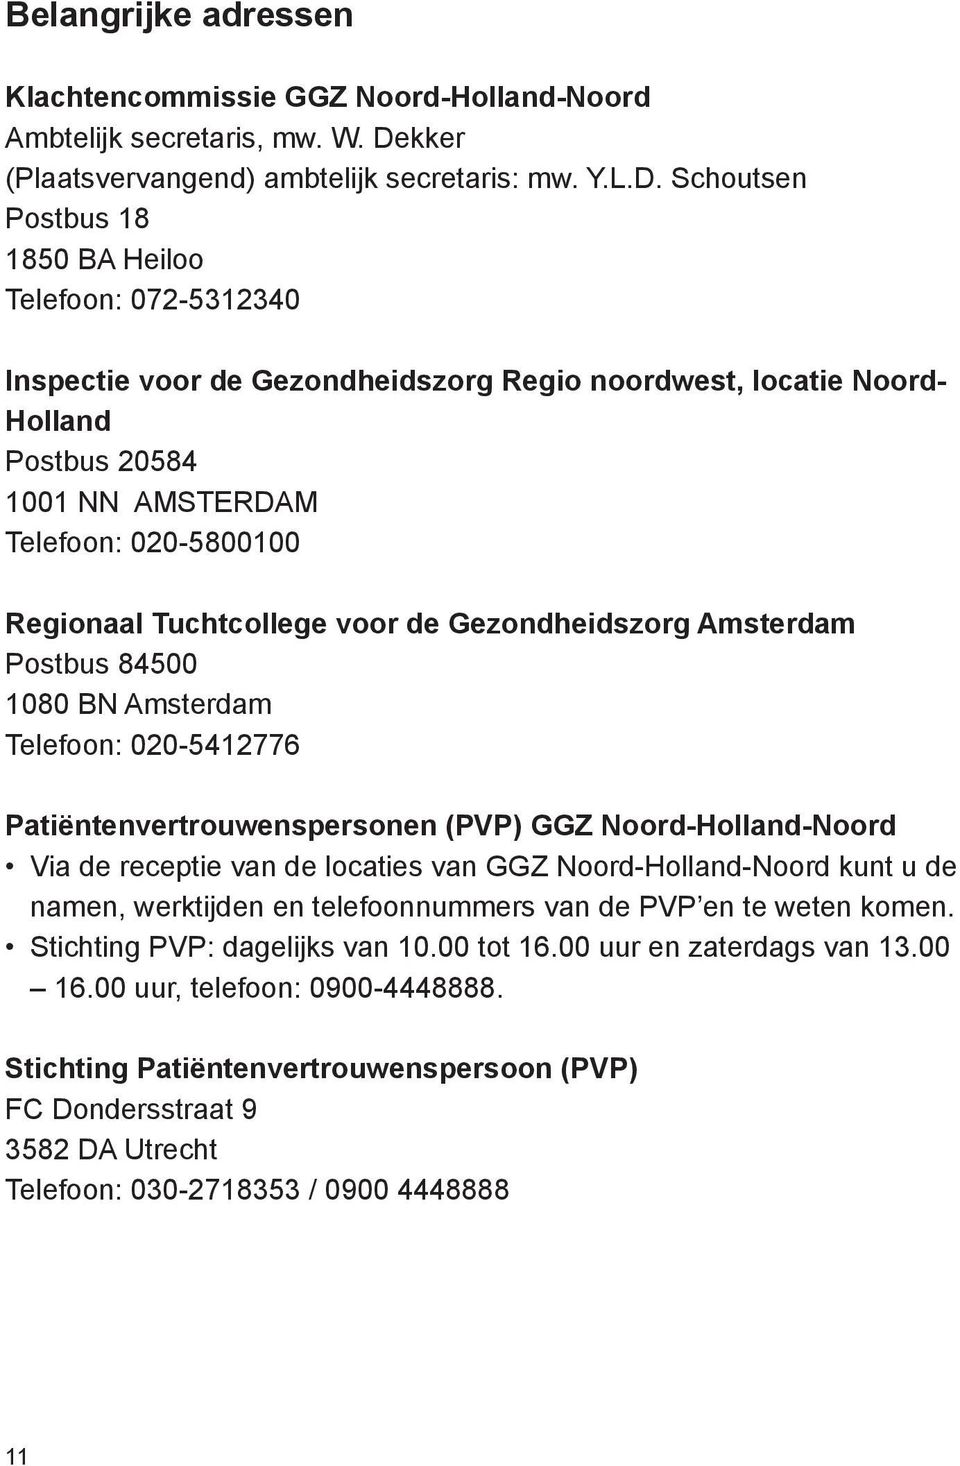 Schoutsen Postbus 18 1850 BA Heiloo Telefoon: 072-5312340 Inspectie voor de Gezondheidszorg Regio noordwest, locatie Noord- Holland Postbus 20584 1001 NN AMSTERDAM Telefoon: 020-5800100 Regionaal